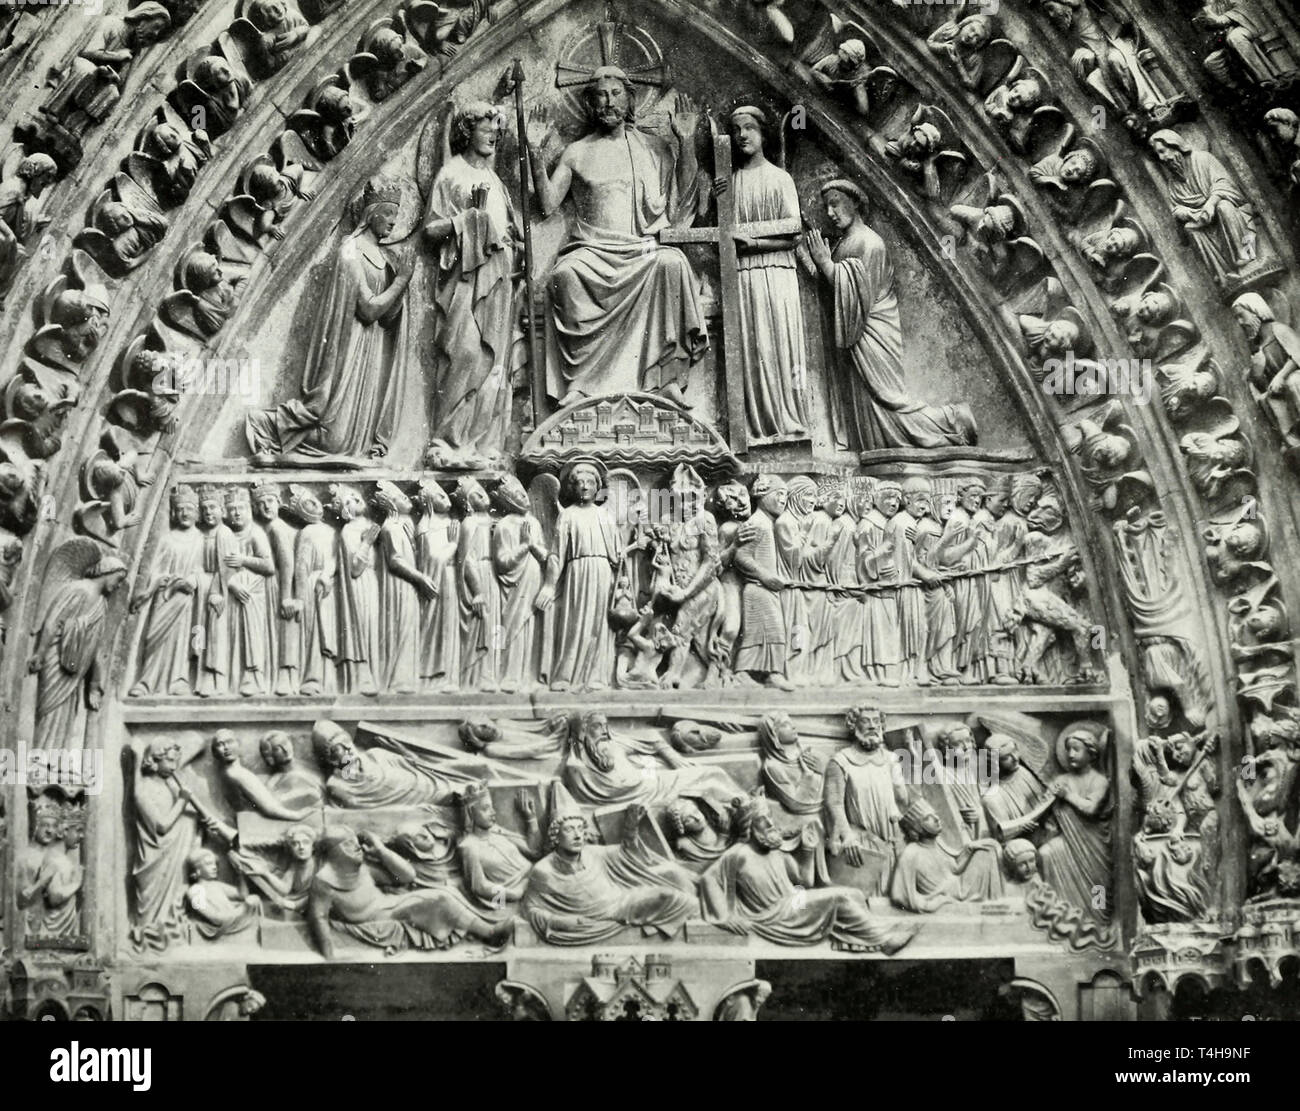 La catedral de Notre Dame de París - La última sentencia, circa 1905 Foto de stock